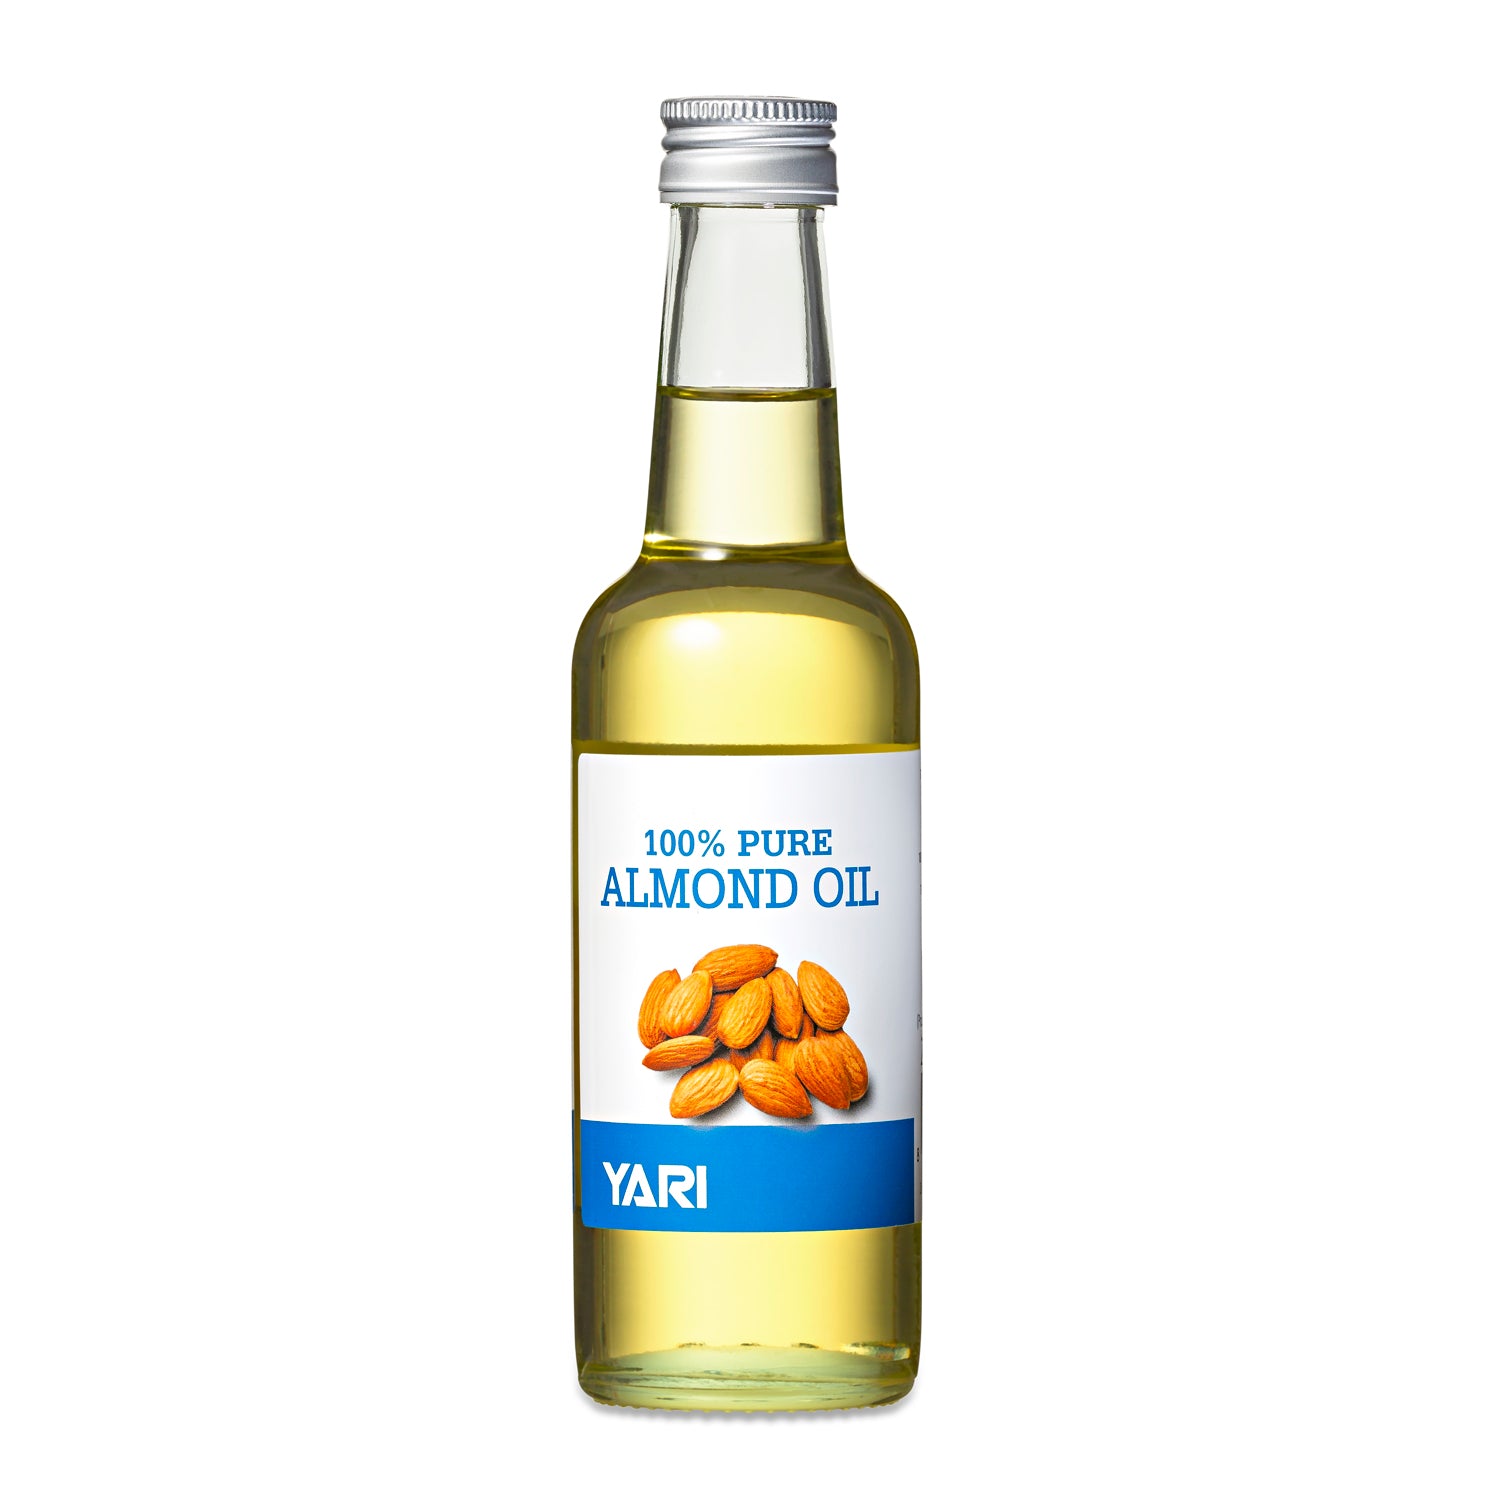 Yari - 100% Pure Almond Oil 250ml